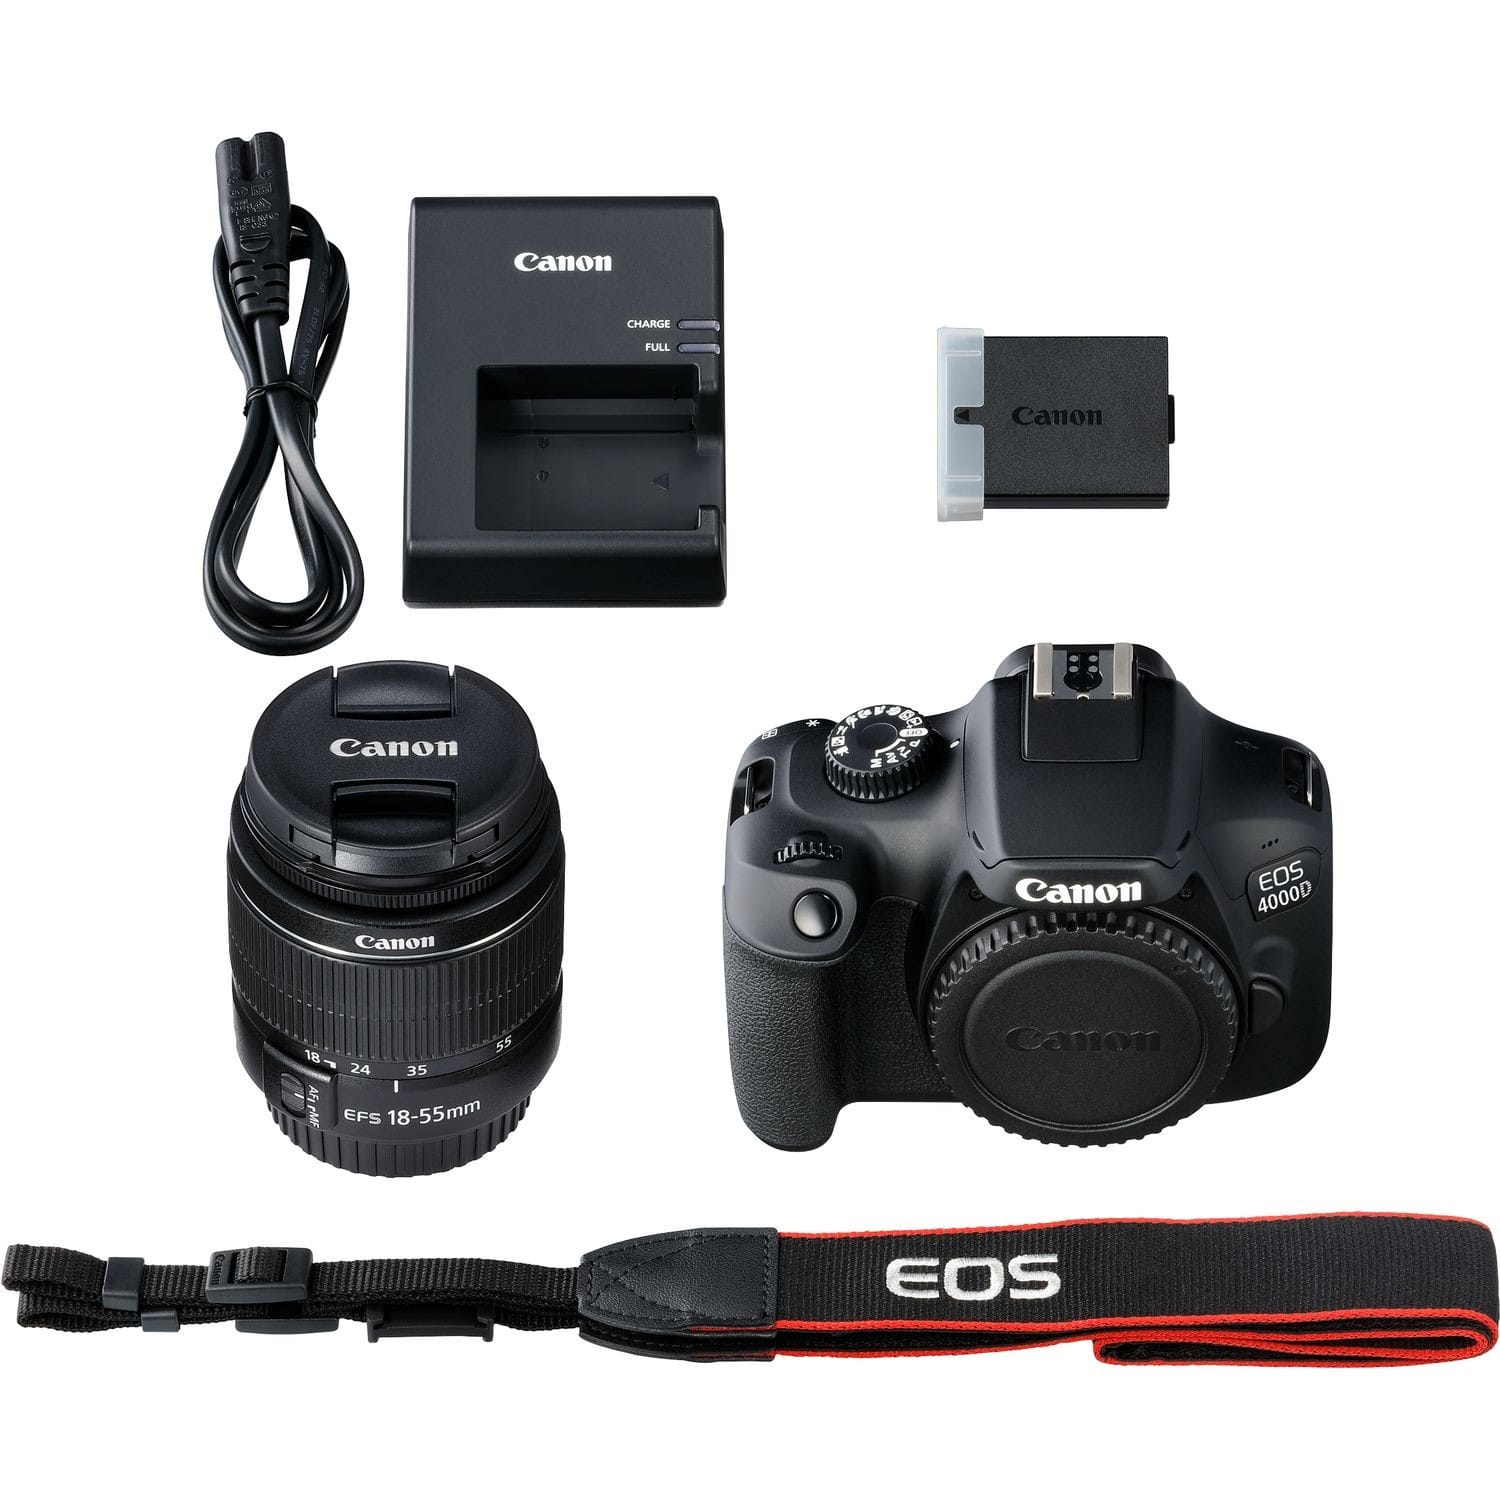 CANON - Appareil reflex numérique EOS 800D boitier + optique 18-55 IS STM -  24,2Mpx - rafale 6 img./s - écran tactile 7,7cm orientable - vidéo Full HD